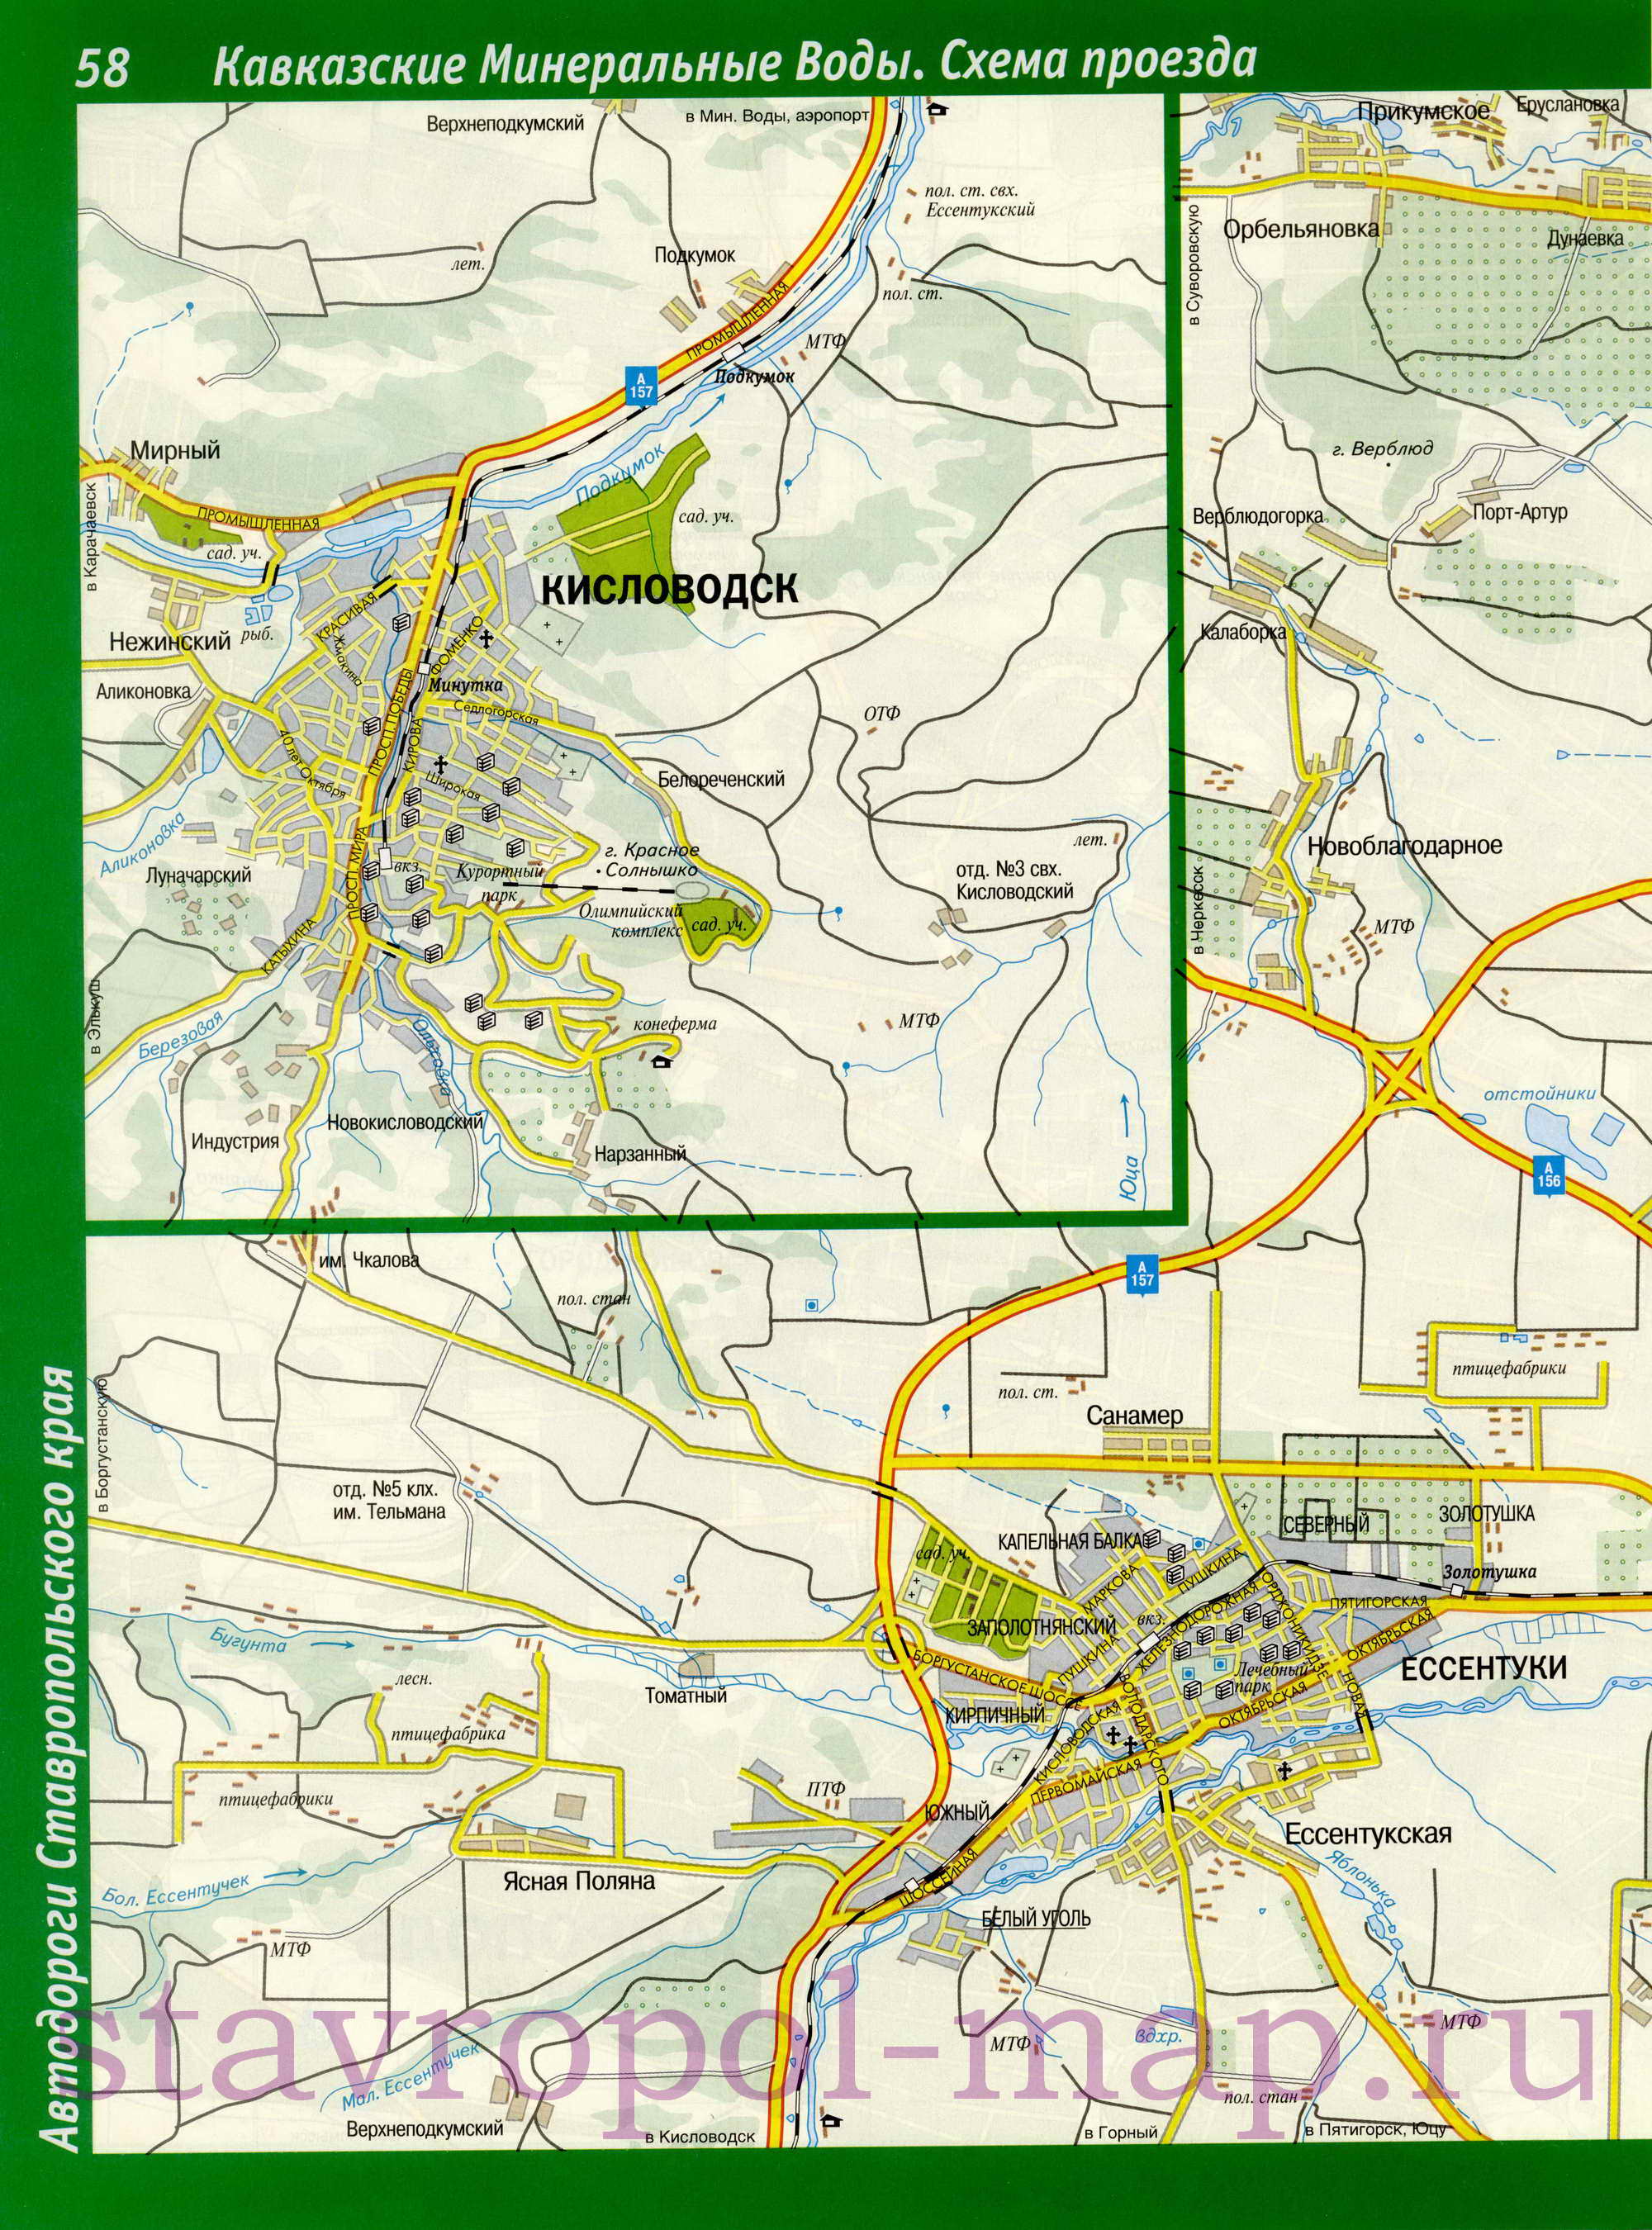  Карта Кавказских Минеральных Вод. Схема проезда, подробная карта Кавказских Минеральных Вод, A0 - 